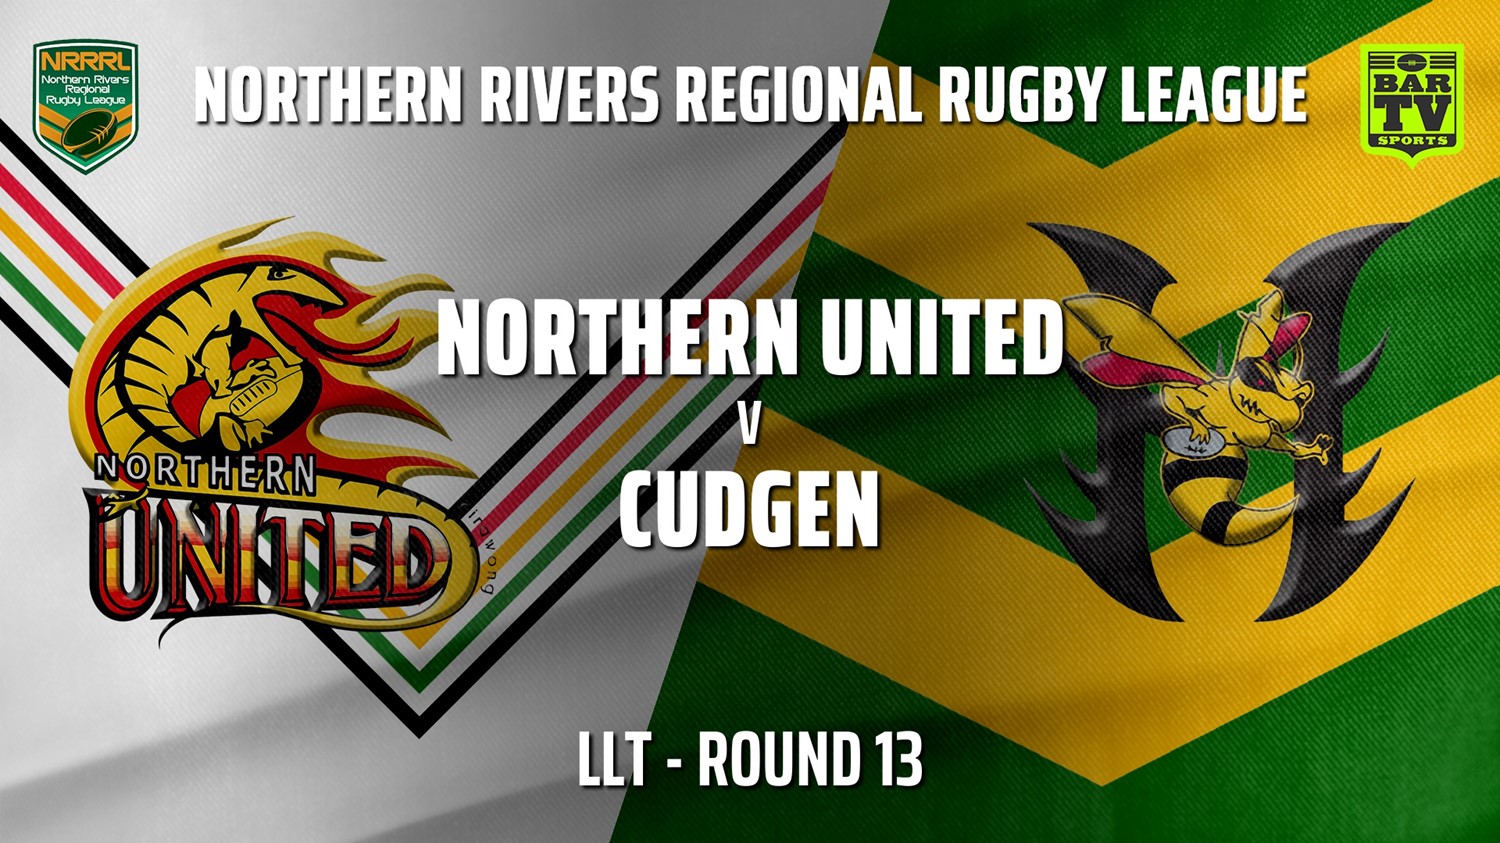 210731-Northern Rivers Round 13 - LLT - Northern United v Cudgen Hornets Slate Image